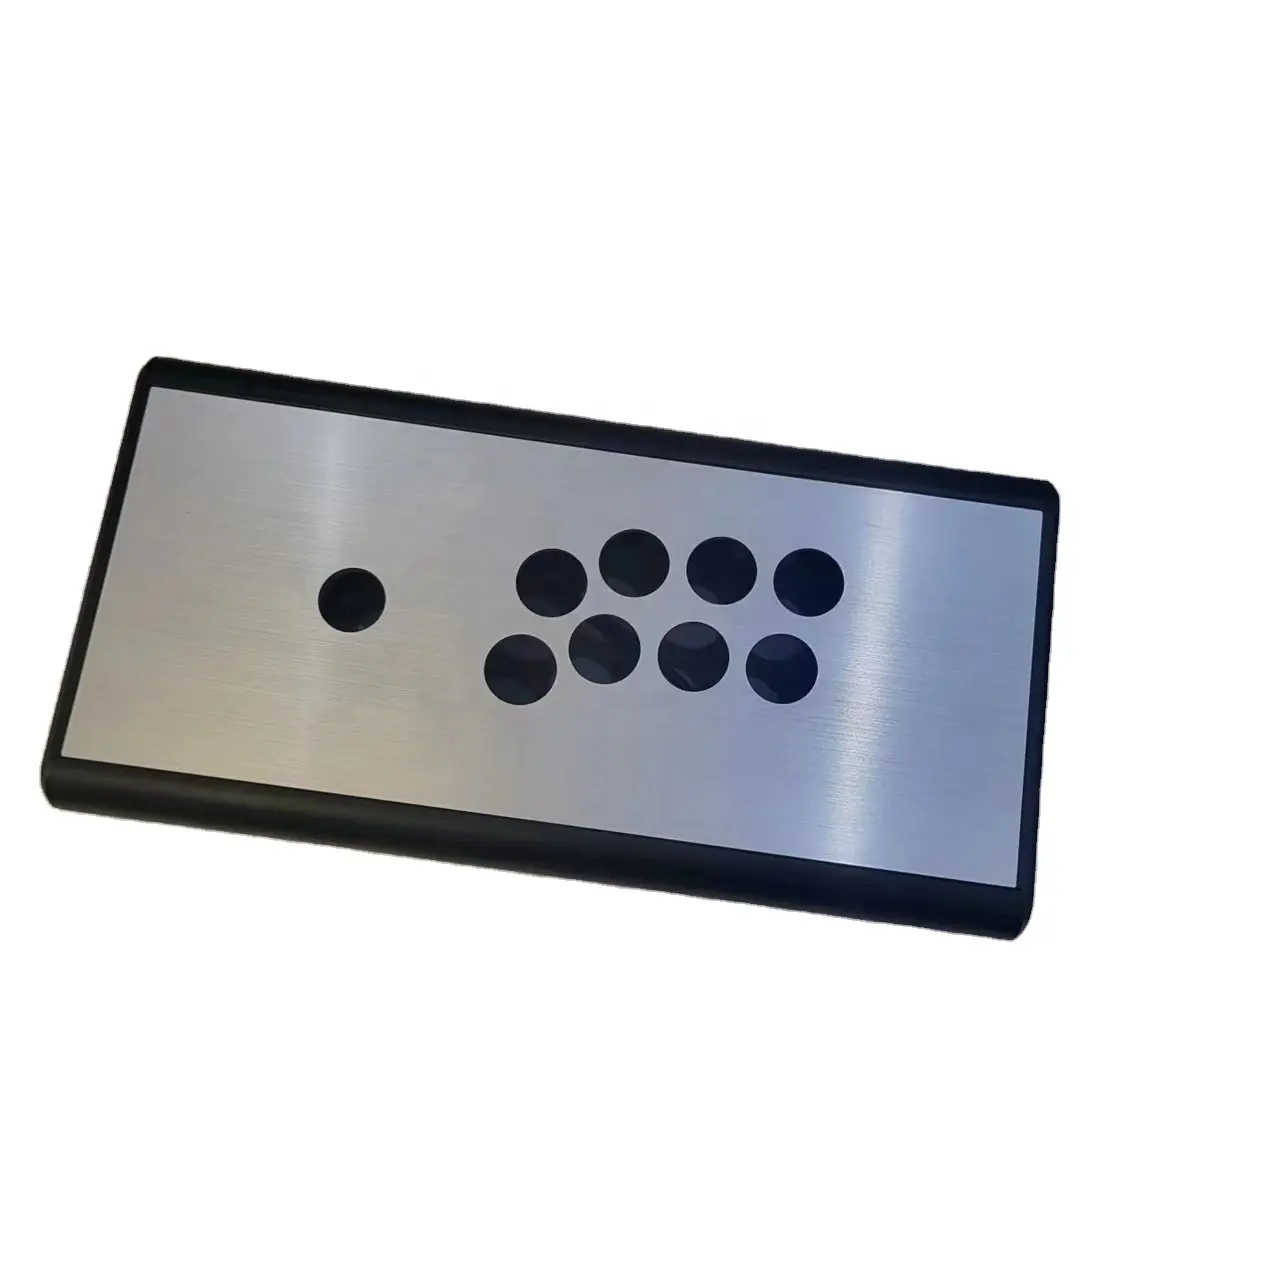 Pannello in metallo spazzolato kit fai da te arcade game joystick box personalizzazione Eimpty hitbox arcade box Hitbox controller kit parti